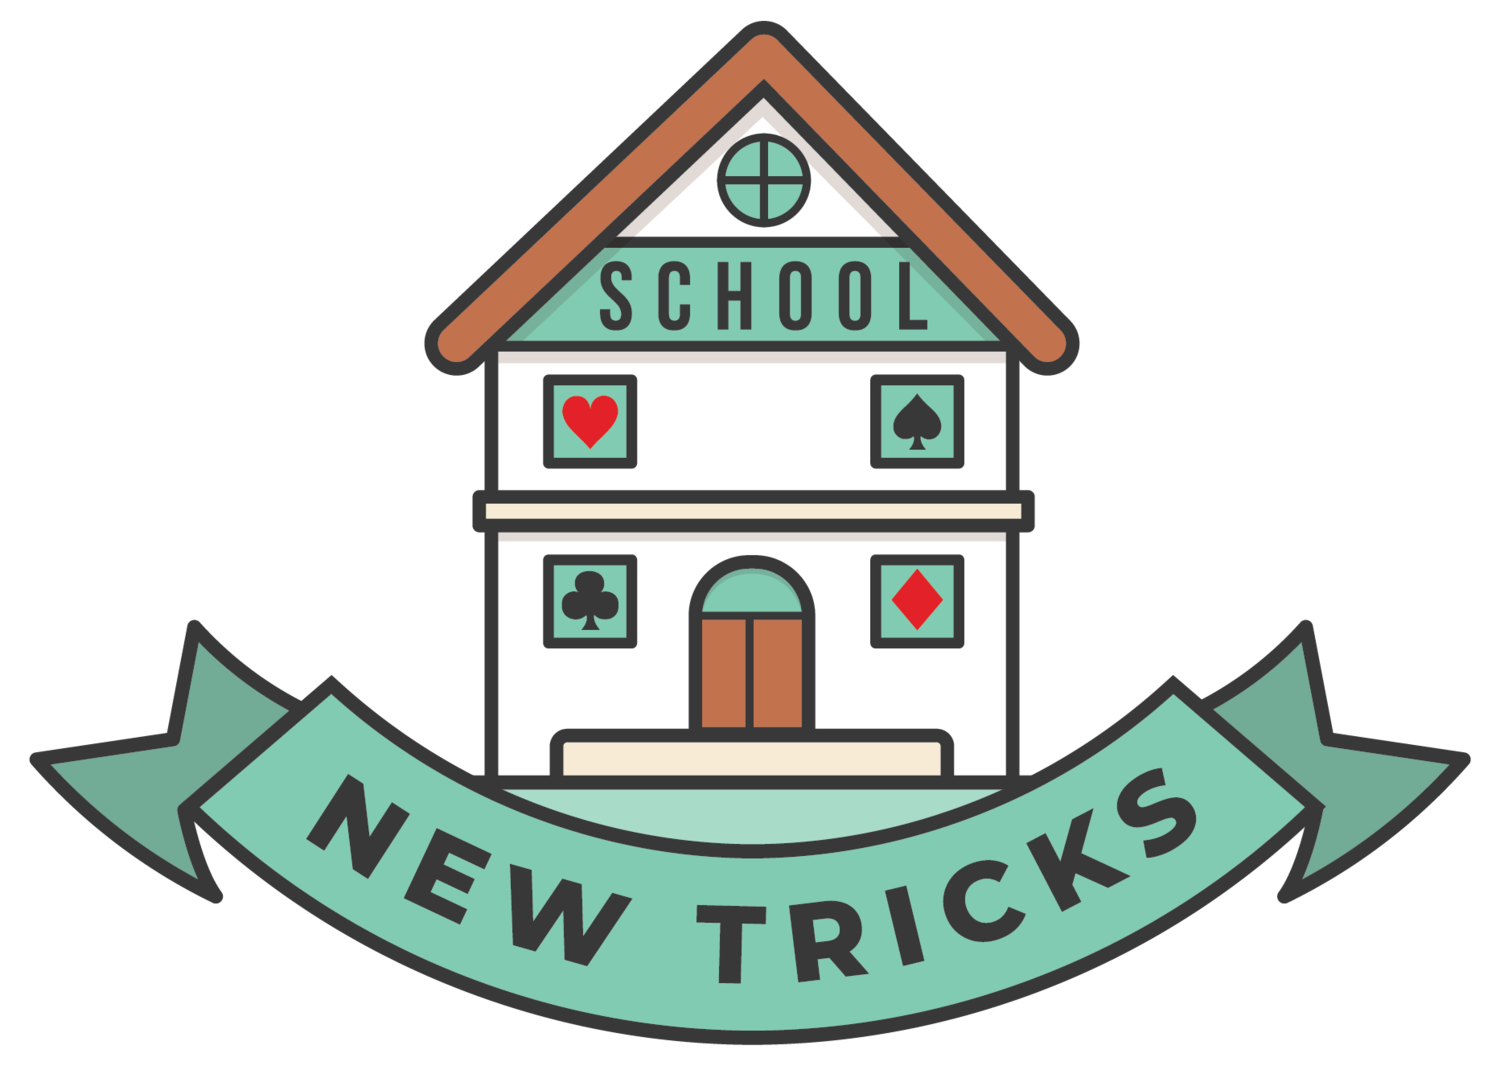 New Tricks Schools